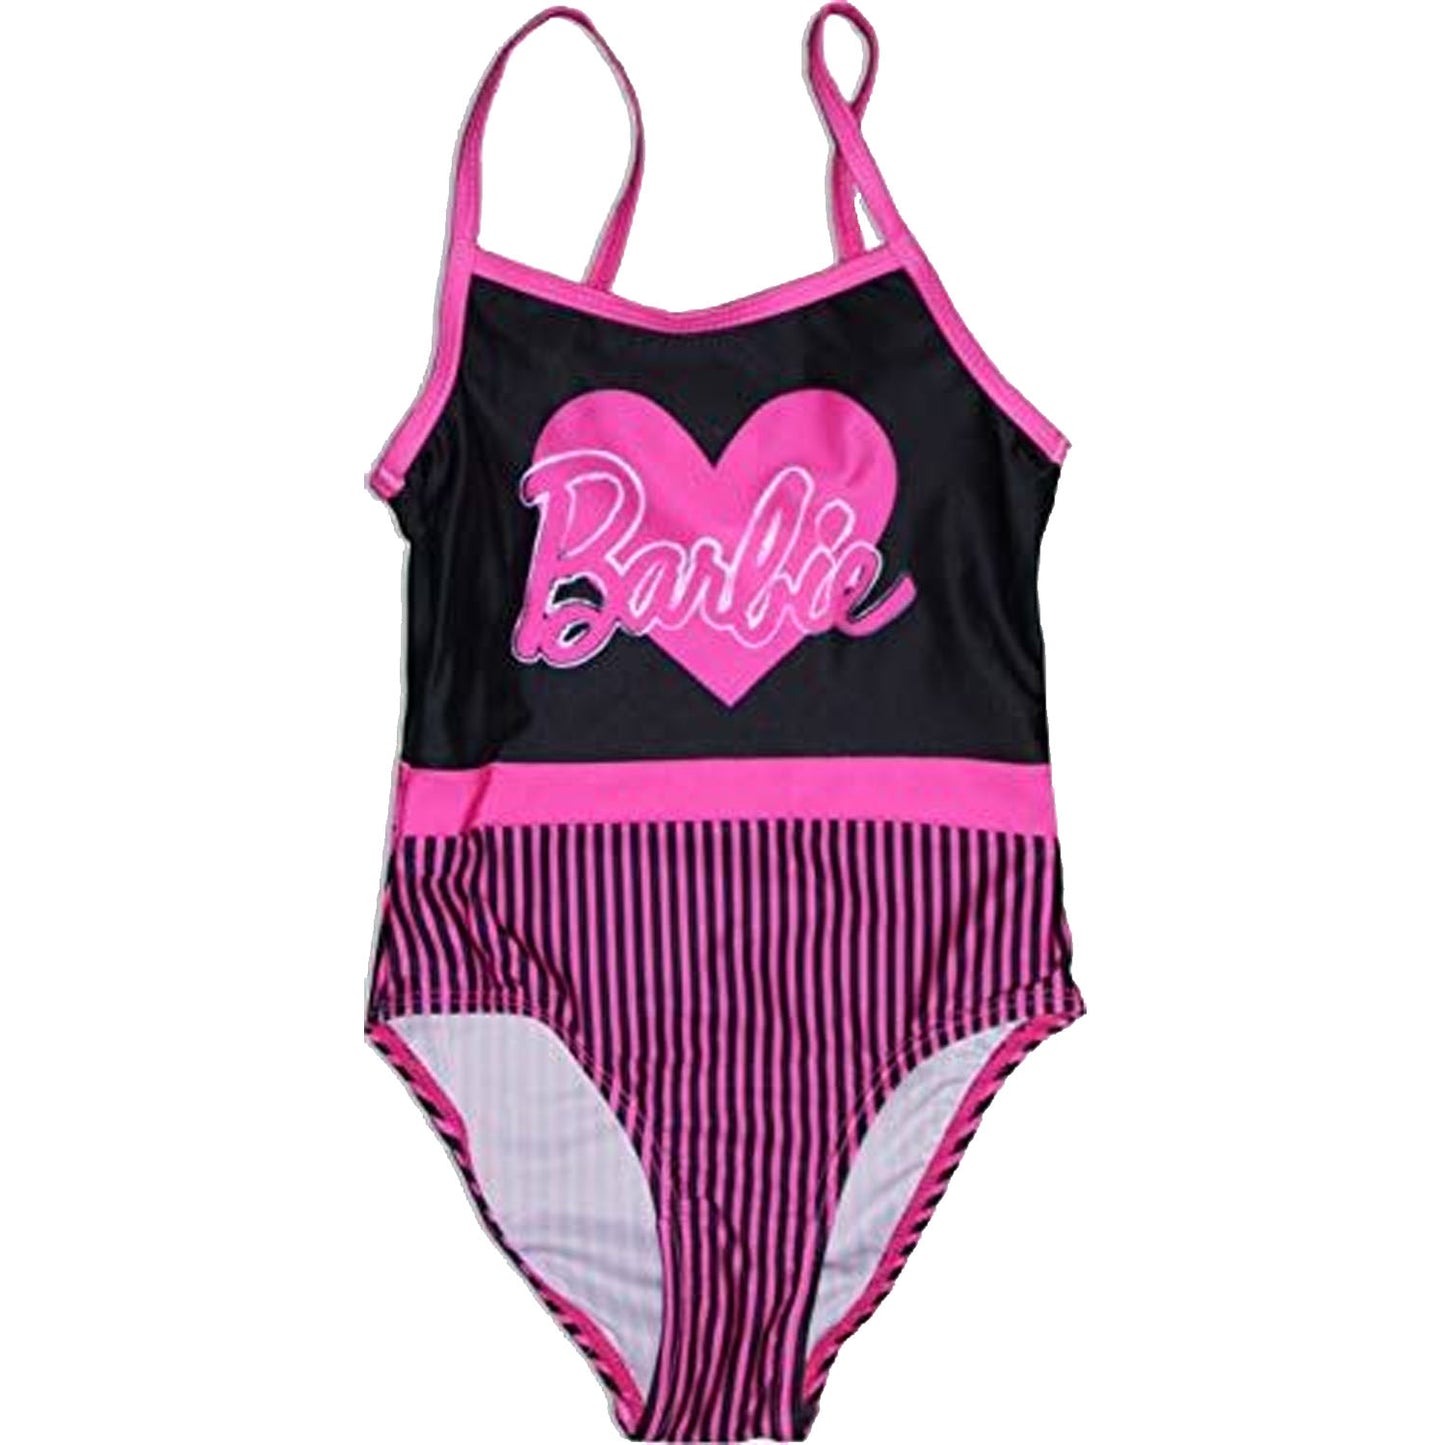 Barbie Girls Swimming Costume